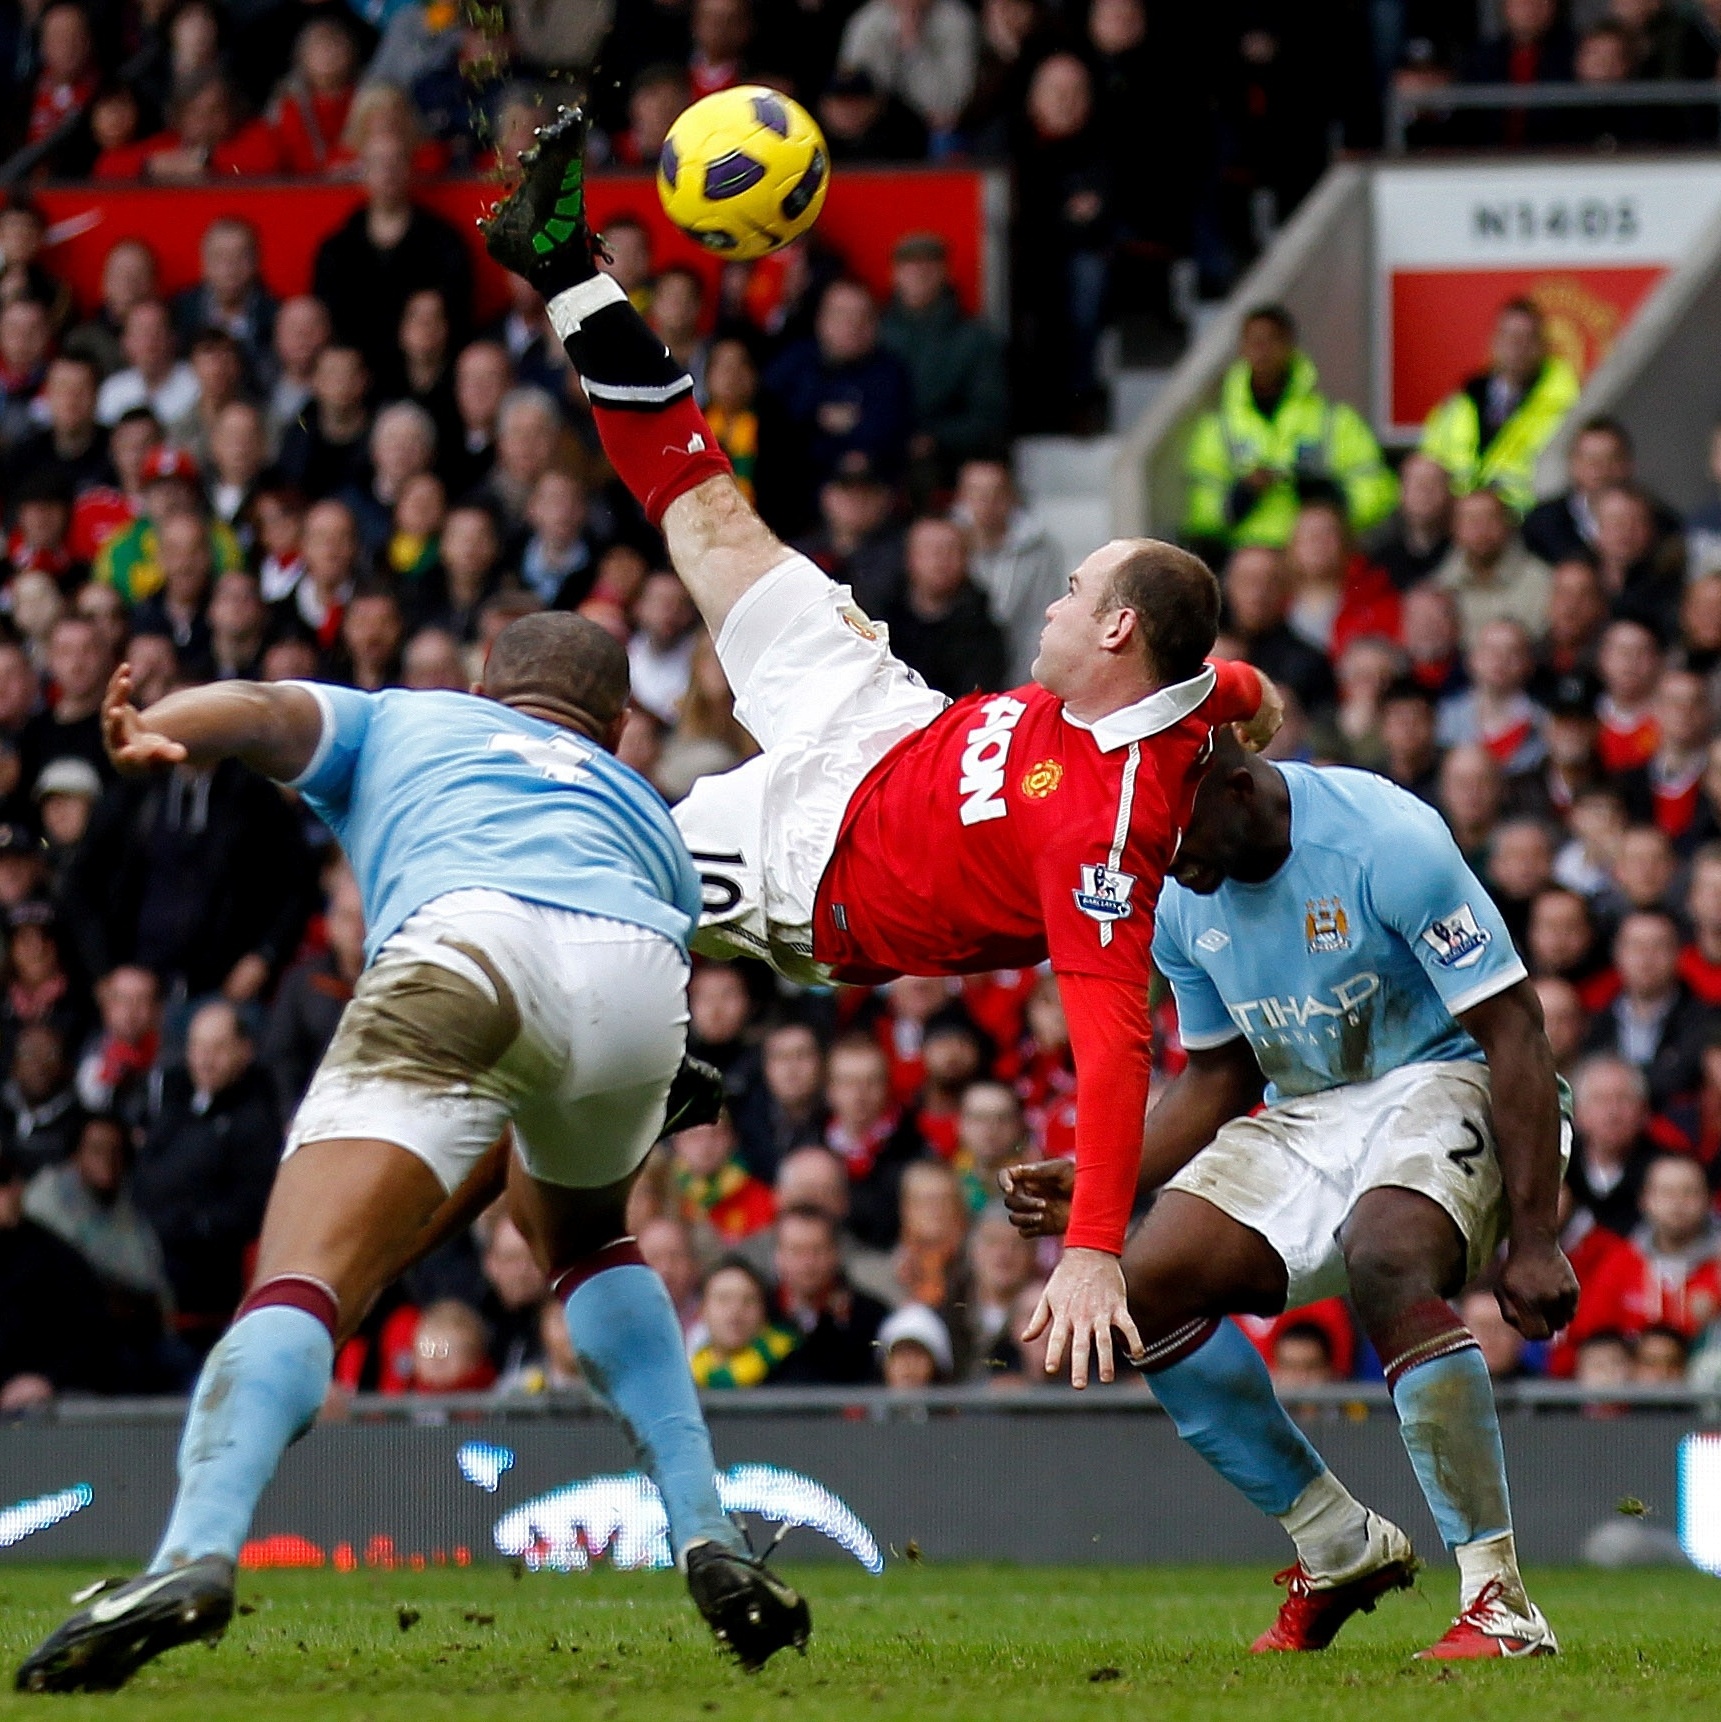 Aos 16 anos, do banco, Milner se sentiu estimulado ao ver Rooney, de 17,  fazer o gol da vitória contra seu time